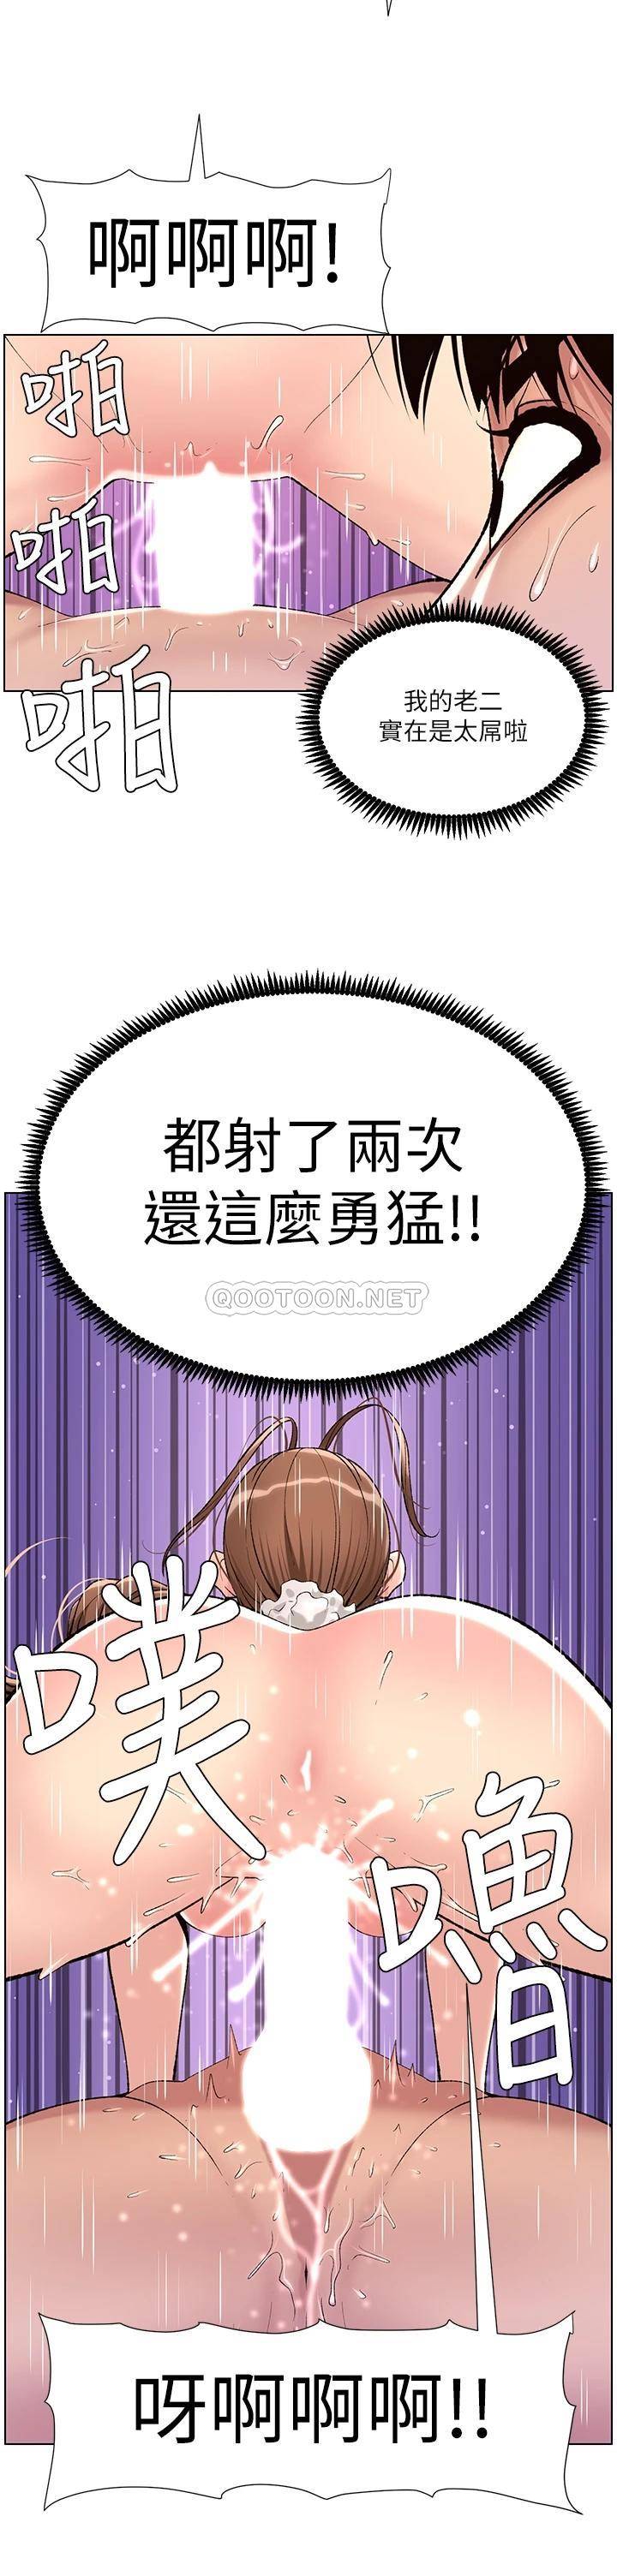 韩国污漫画 帝王App 第16话 你要当我的按摩棒吗? 30